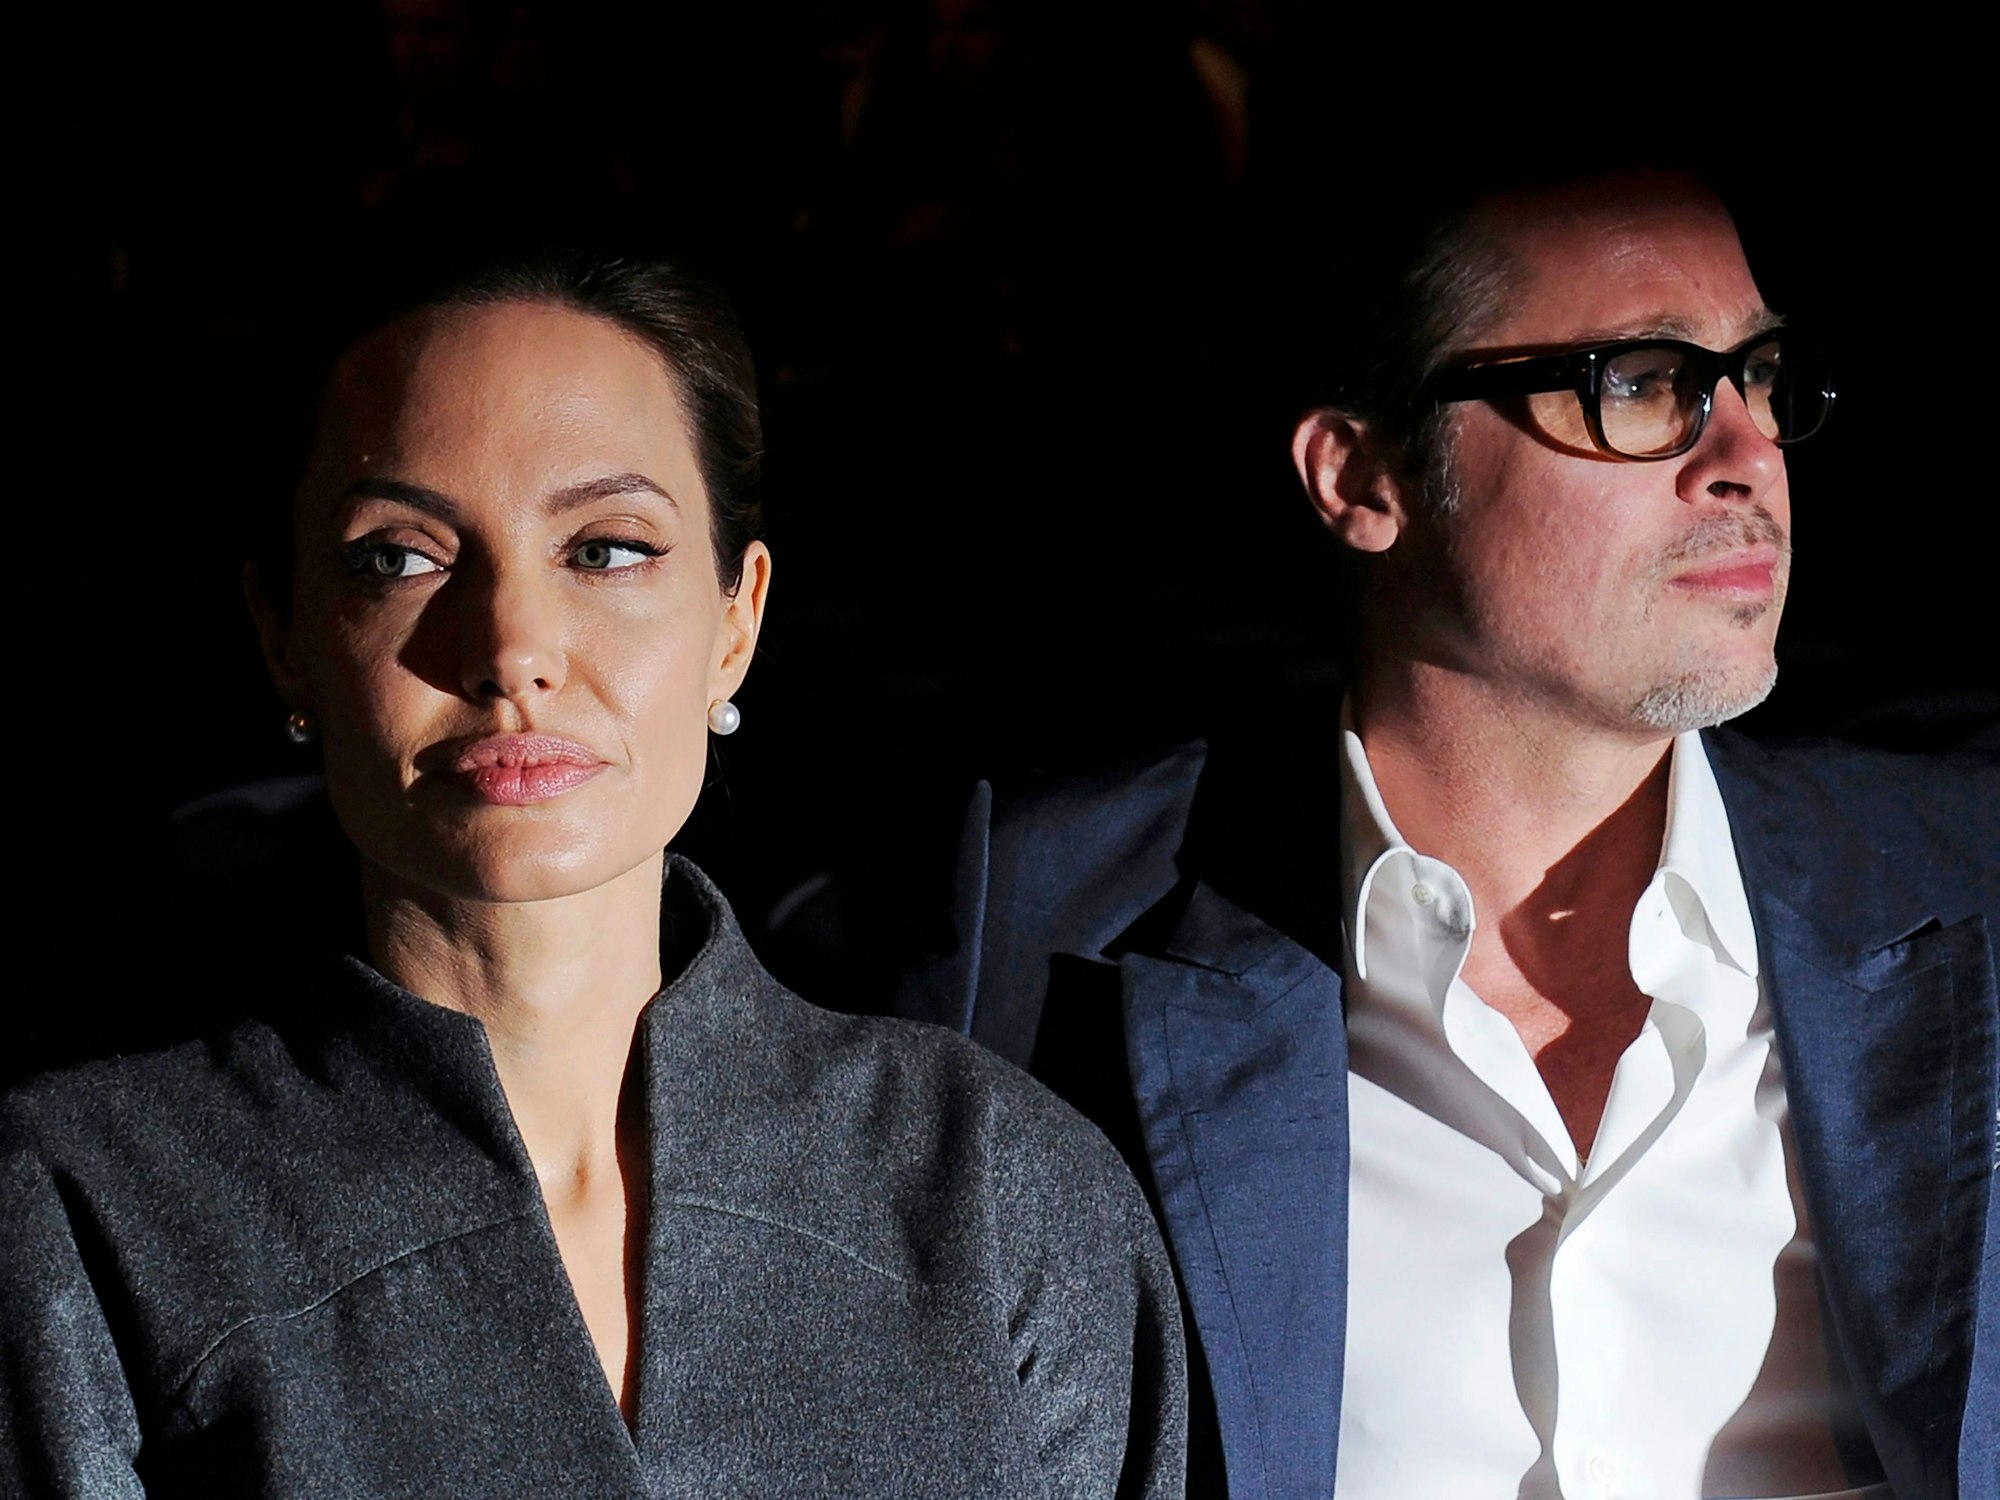 Das damalige US-Schauspielerpaar Angelina Jolie und Brad Pitt 2014 düster dreinblickend aufgenommen.